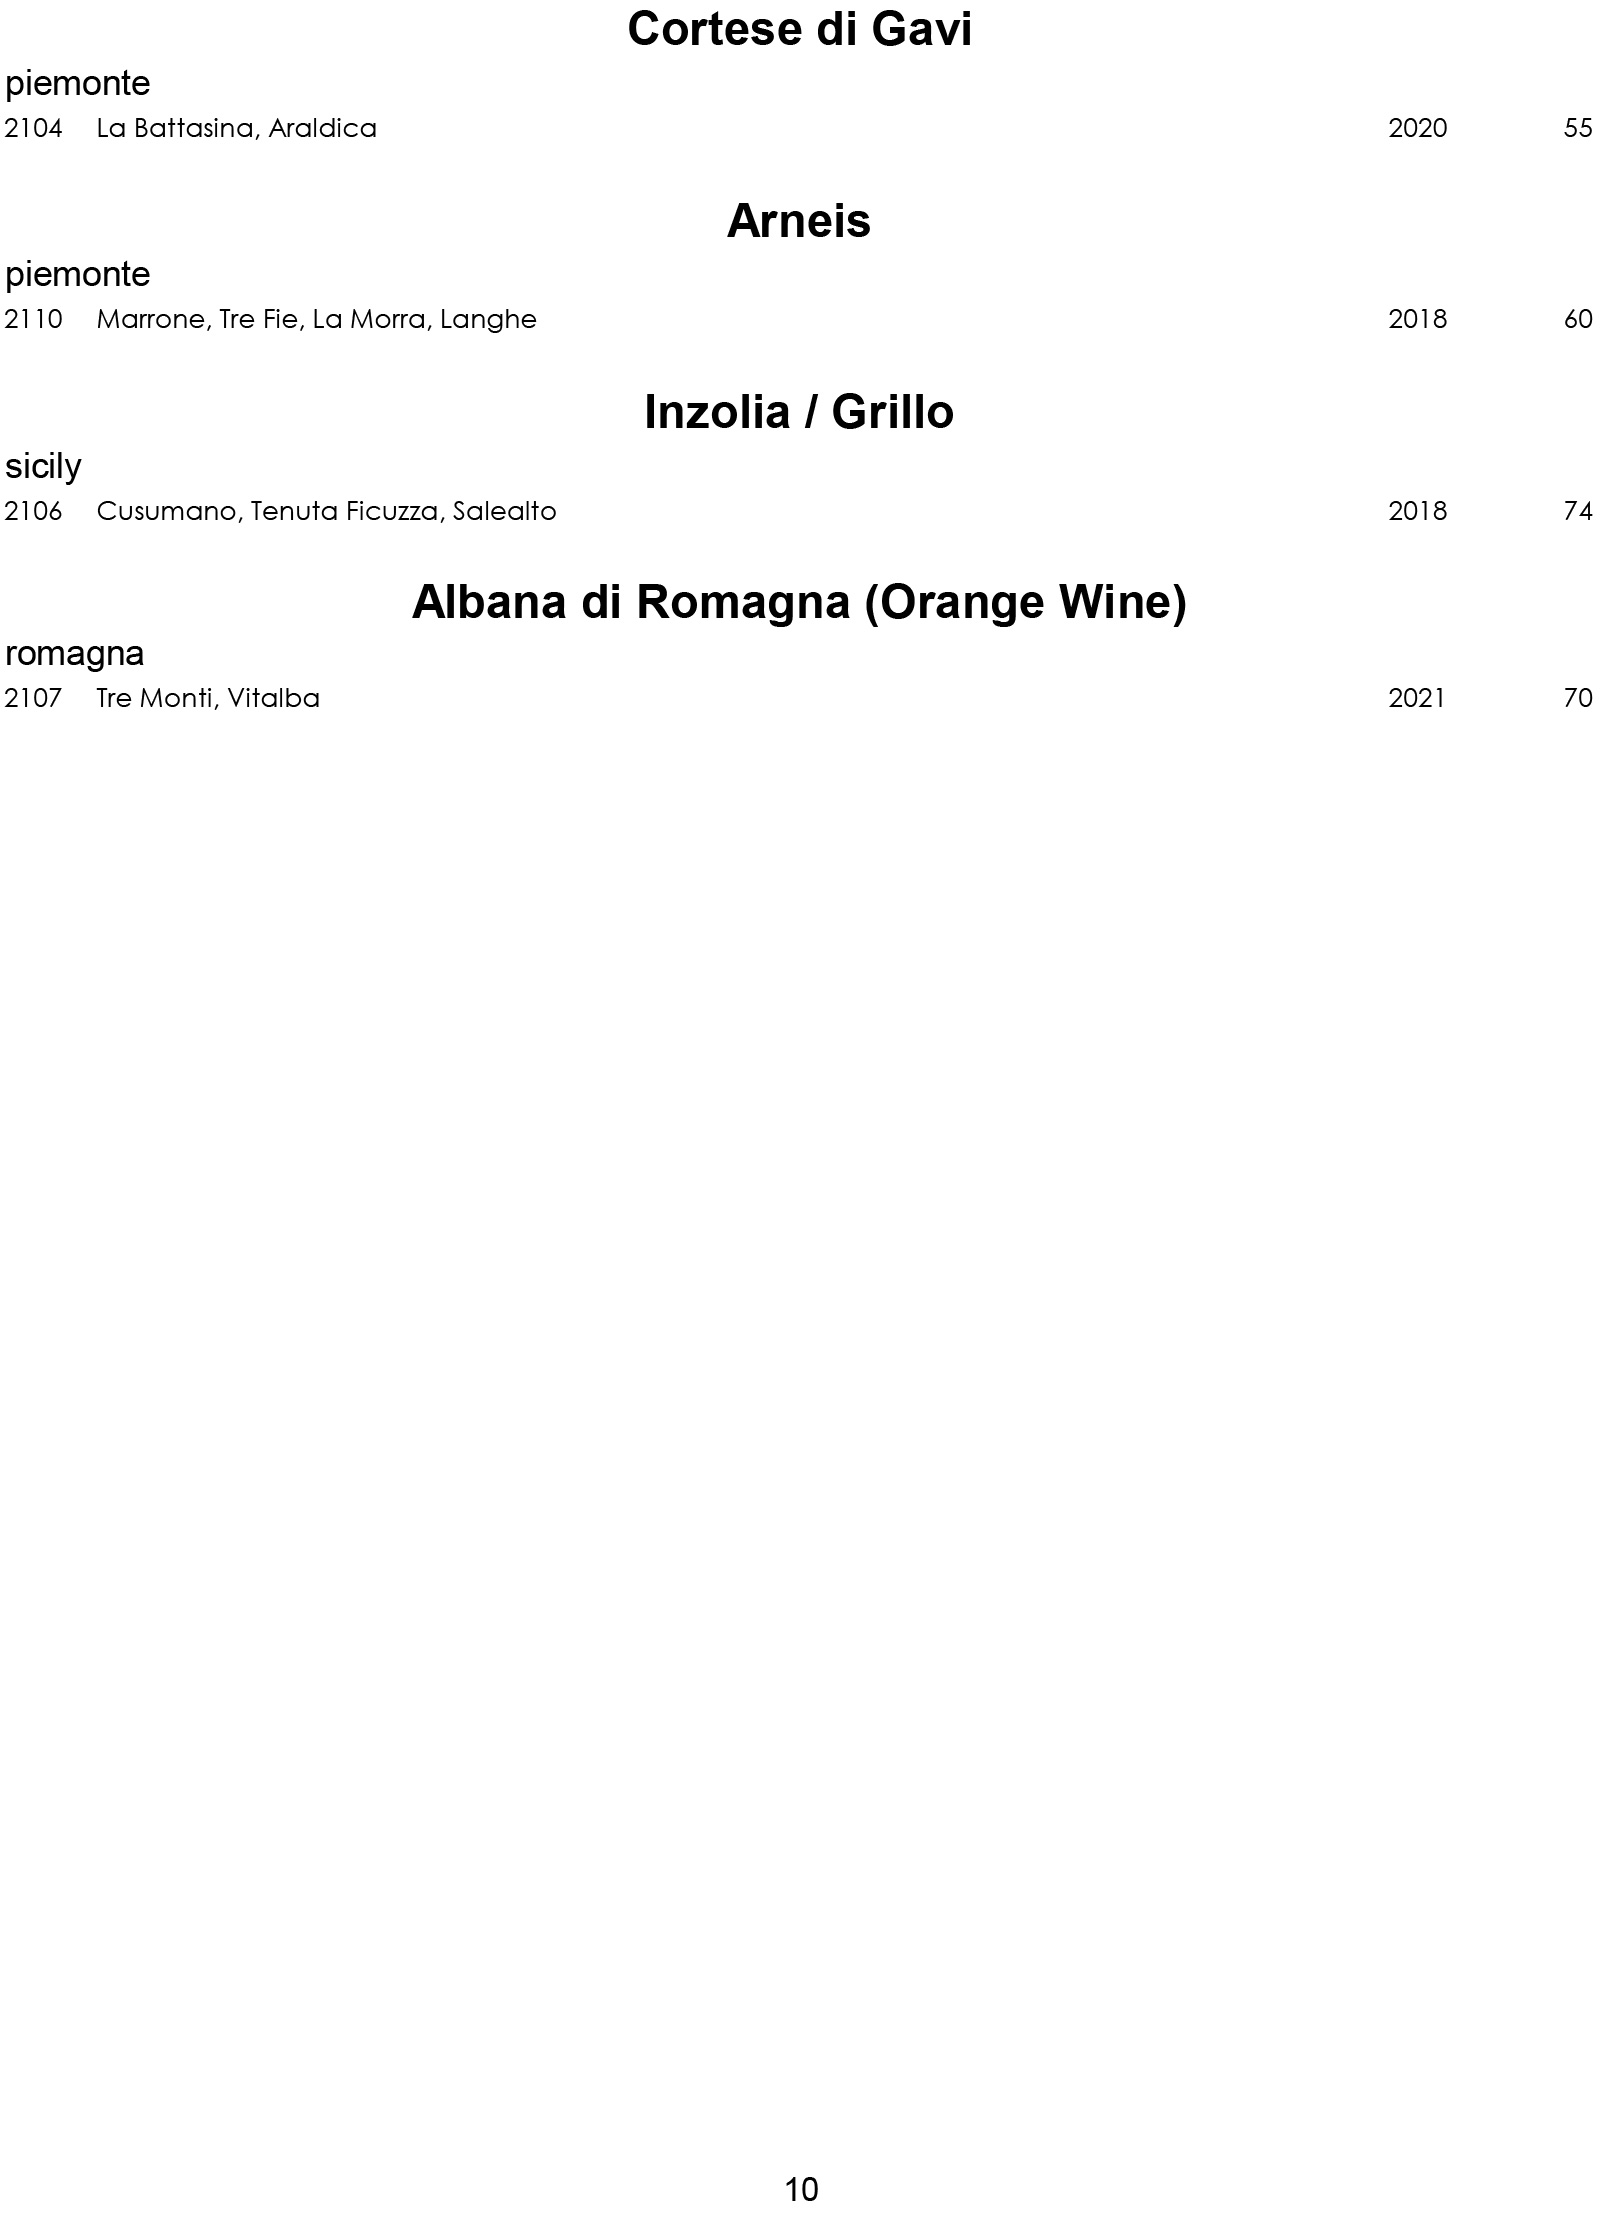 Wine List for Rat's Restaurant - White Wines Final